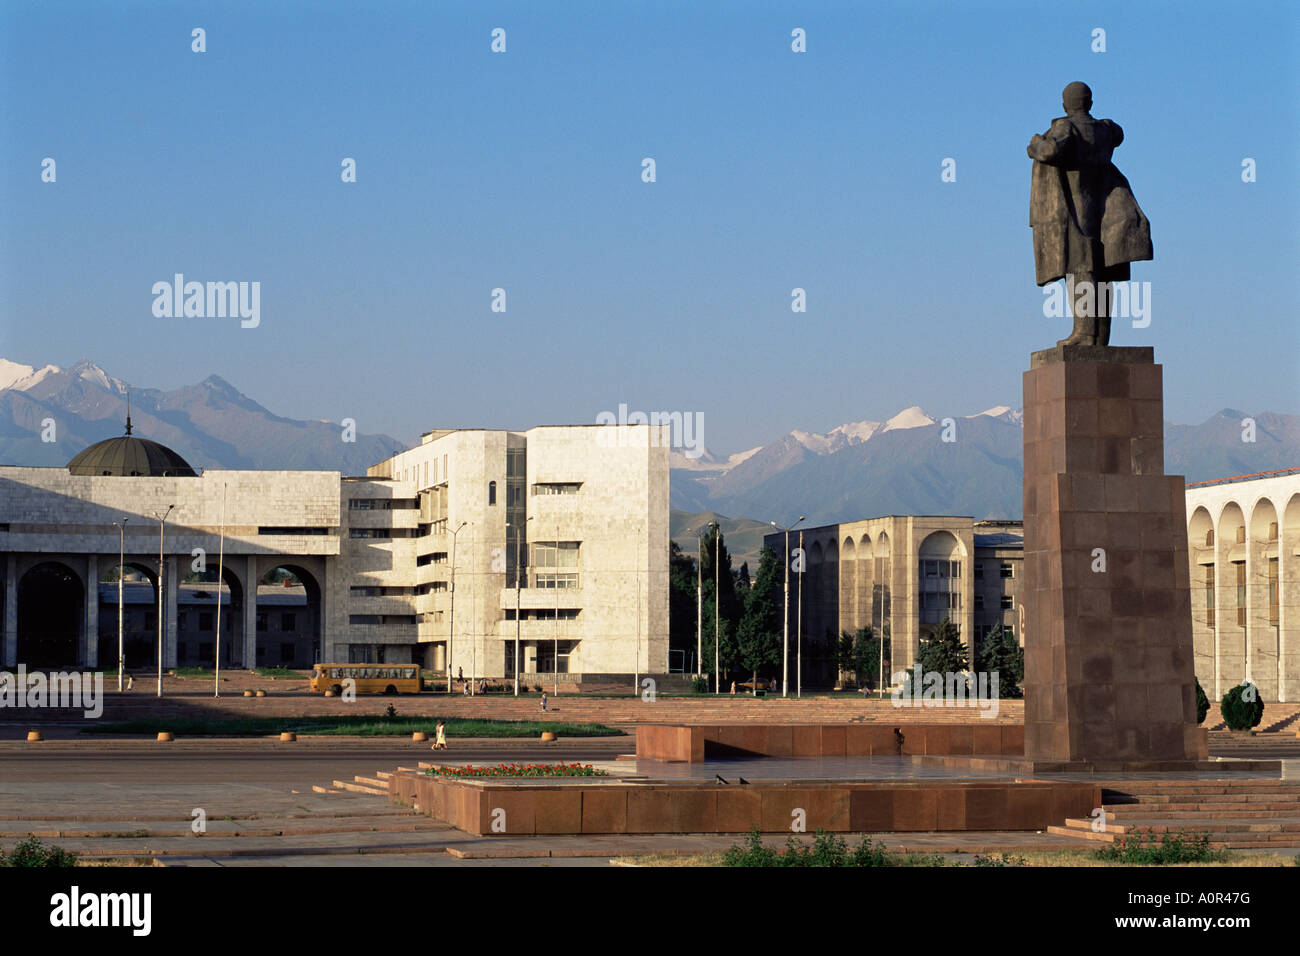 Vue de la Place Lénine à l'égard de l'Ala trop chaîne de montagnes d'Asie centrale Asie Kirghizistan Bichkek Banque D'Images